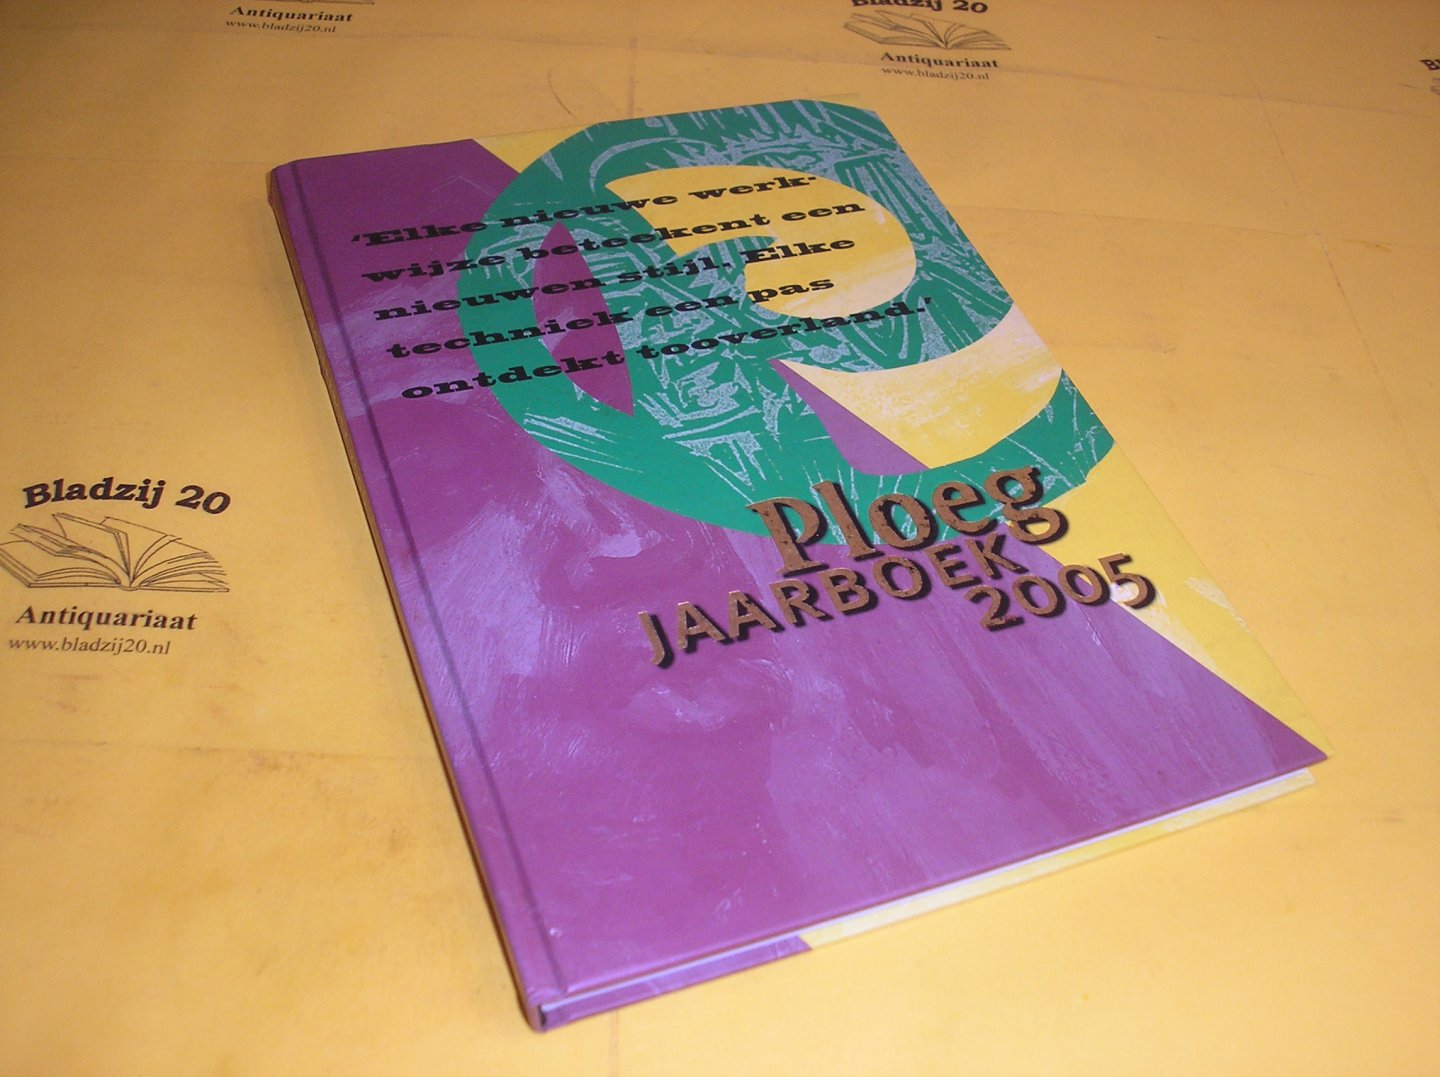 Sijens, Doeke en Steenbruggen, Han. - Ploeg Jaarboek 2005.